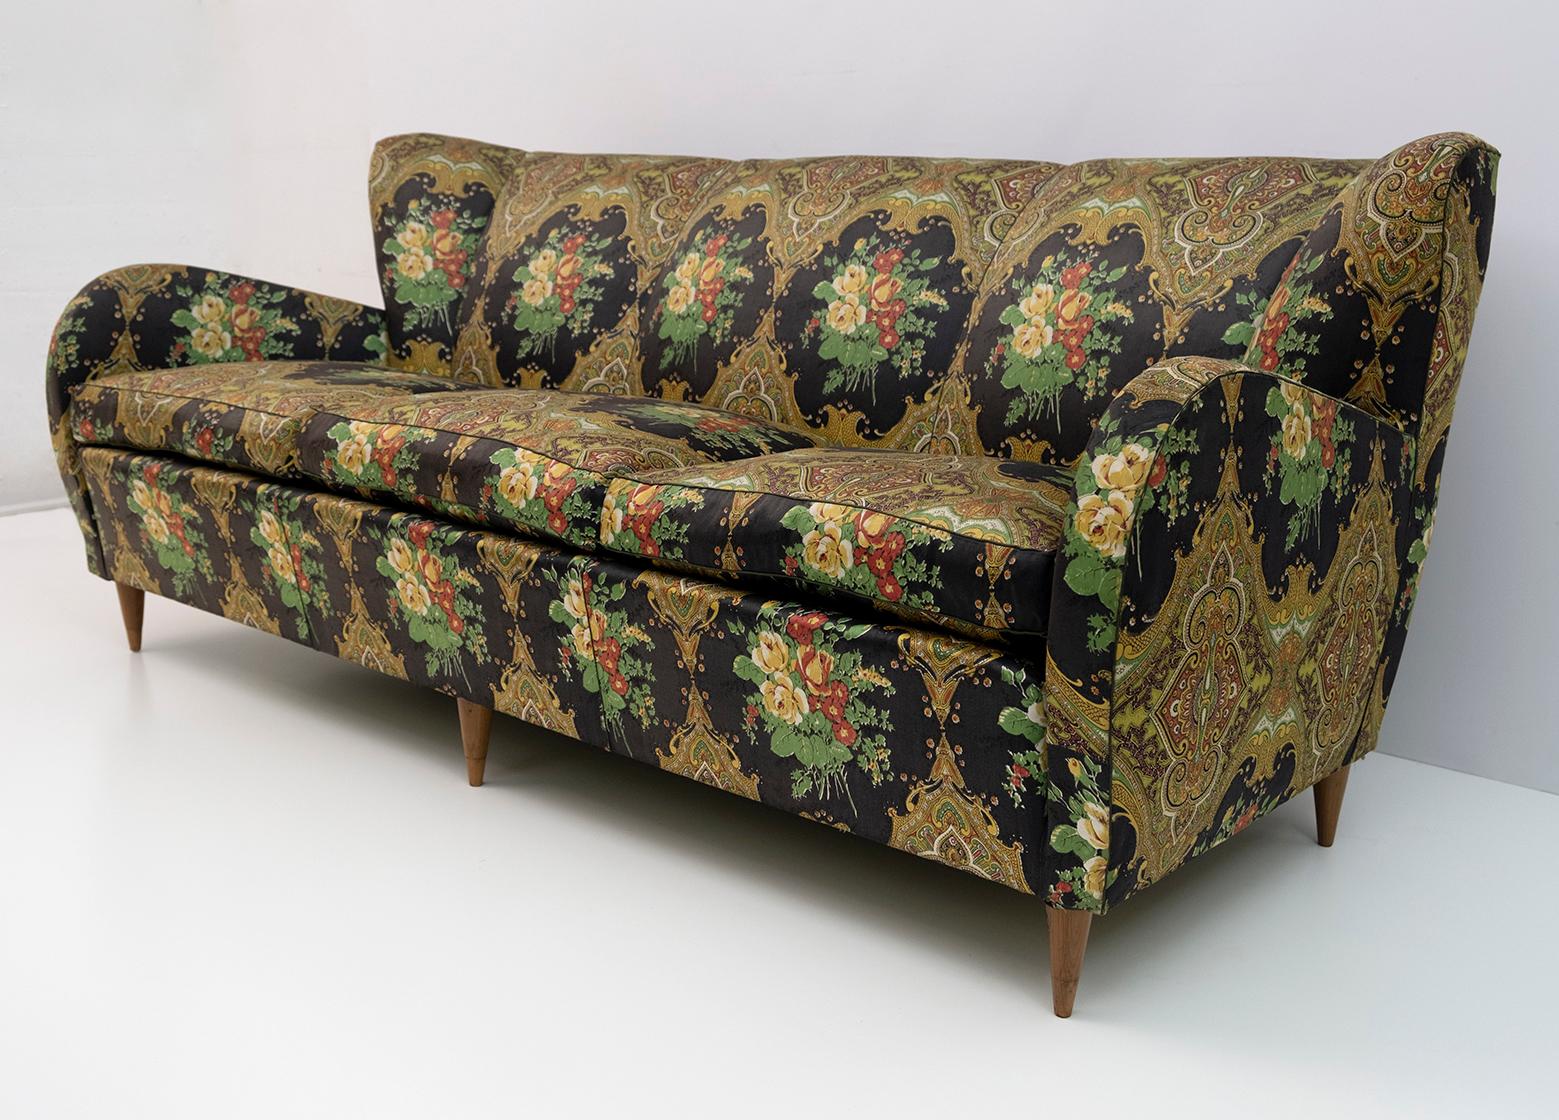 1950 sofa